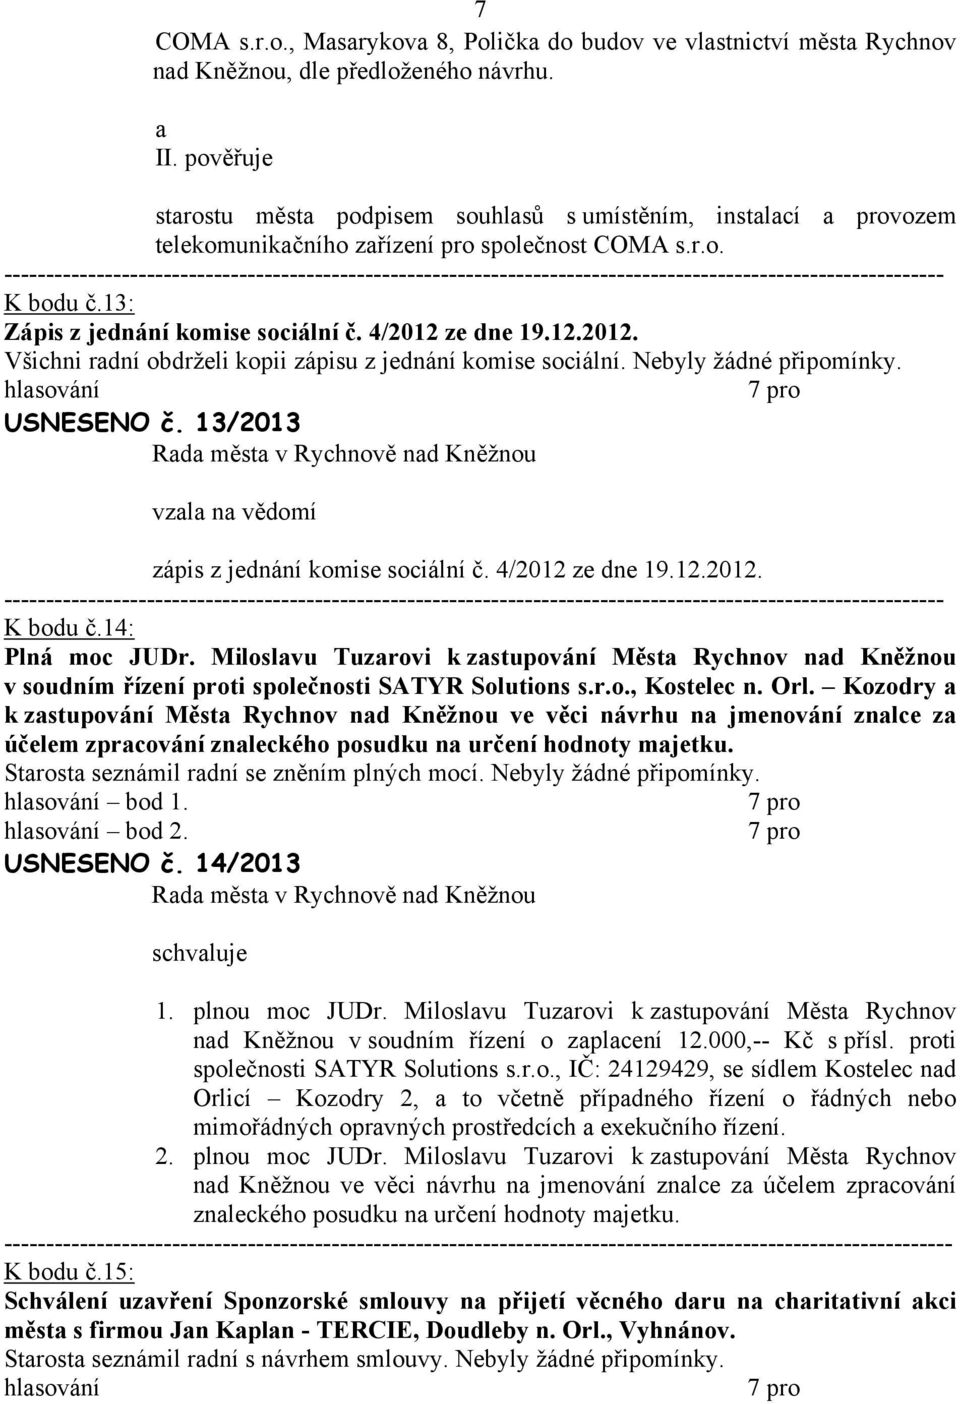 13: Zápis z jednání komise sociální č. 4/2012 ze dne 19.12.2012. Všichni radní obdrželi kopii zápisu z jednání komise sociální. Nebyly žádné USNESENO č.